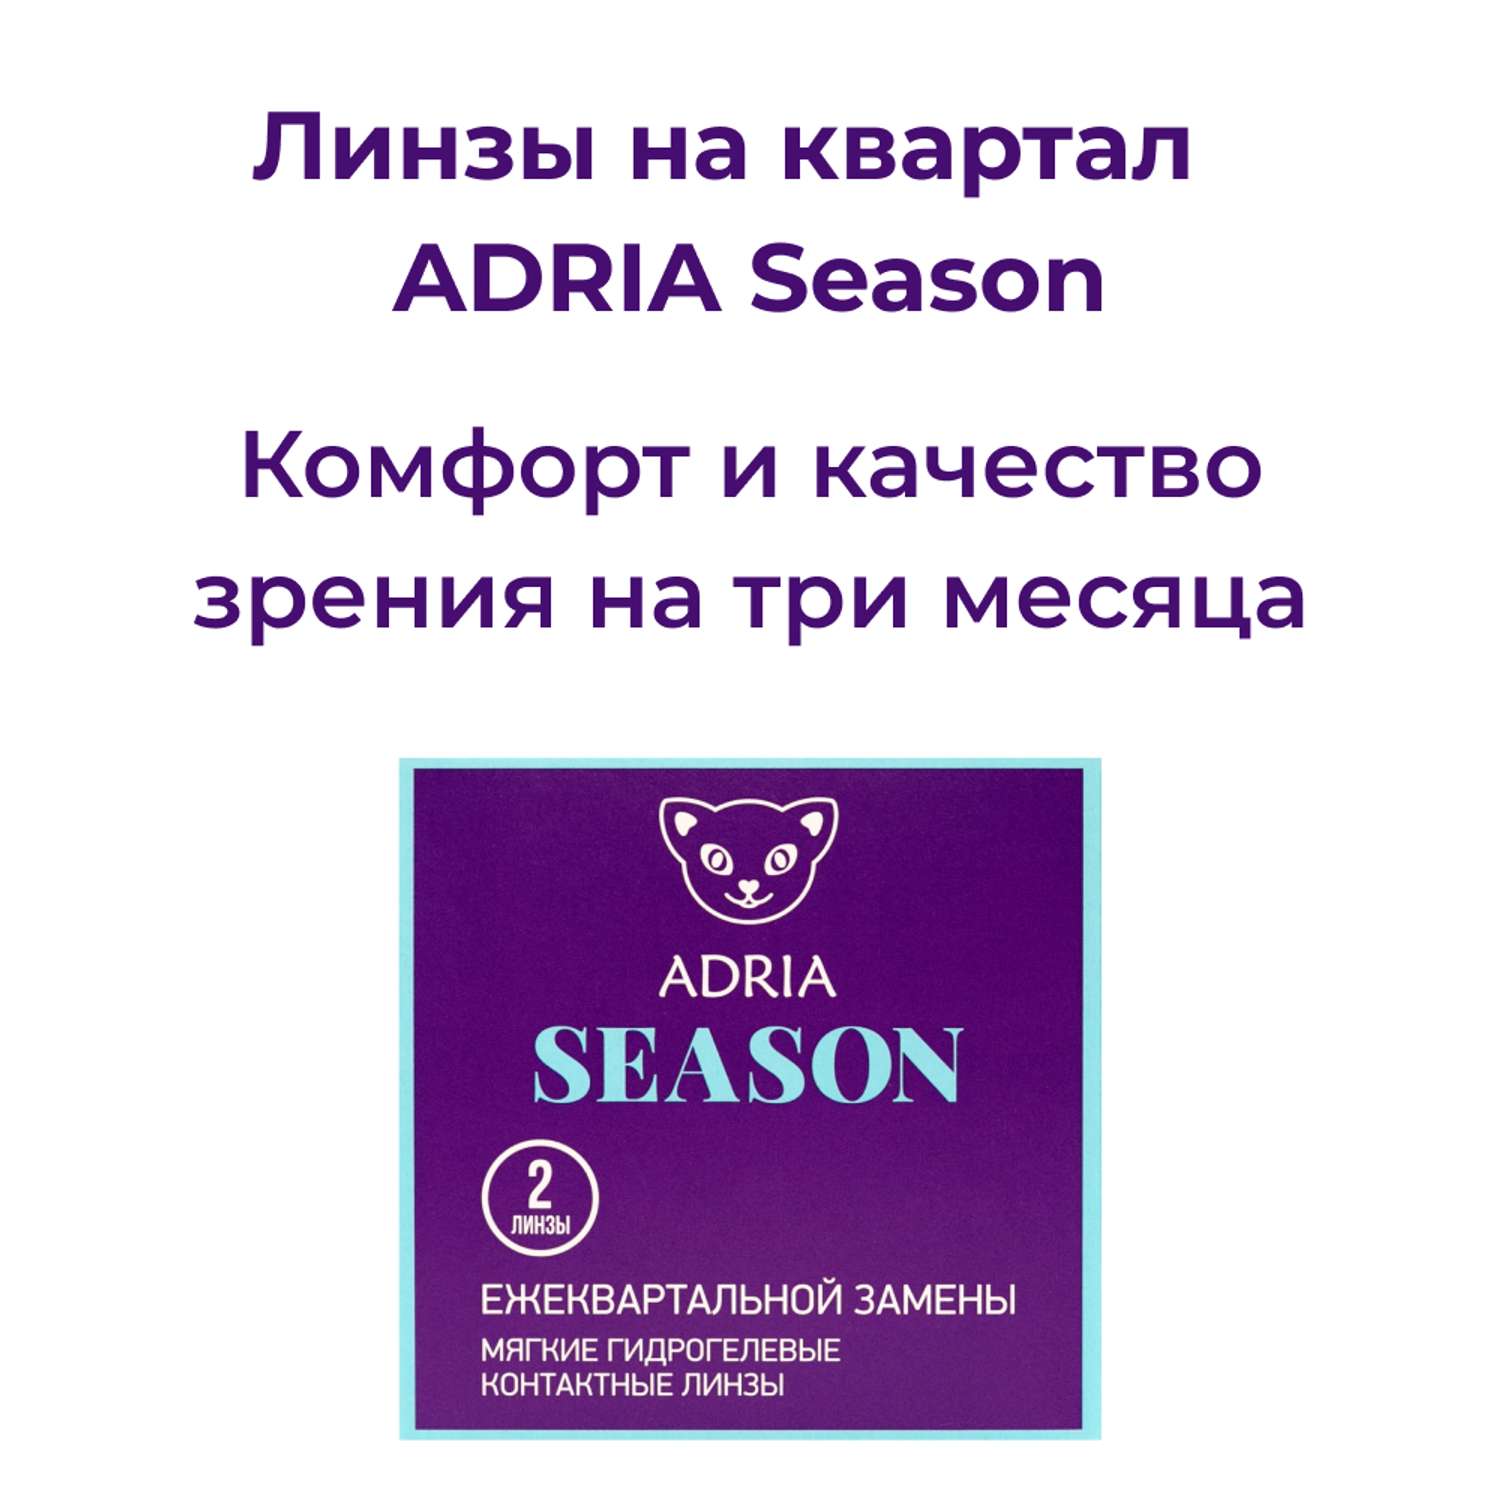 Контактные линзы ADRIA Season 2 линзы R 8.6 -5.75 - фото 2